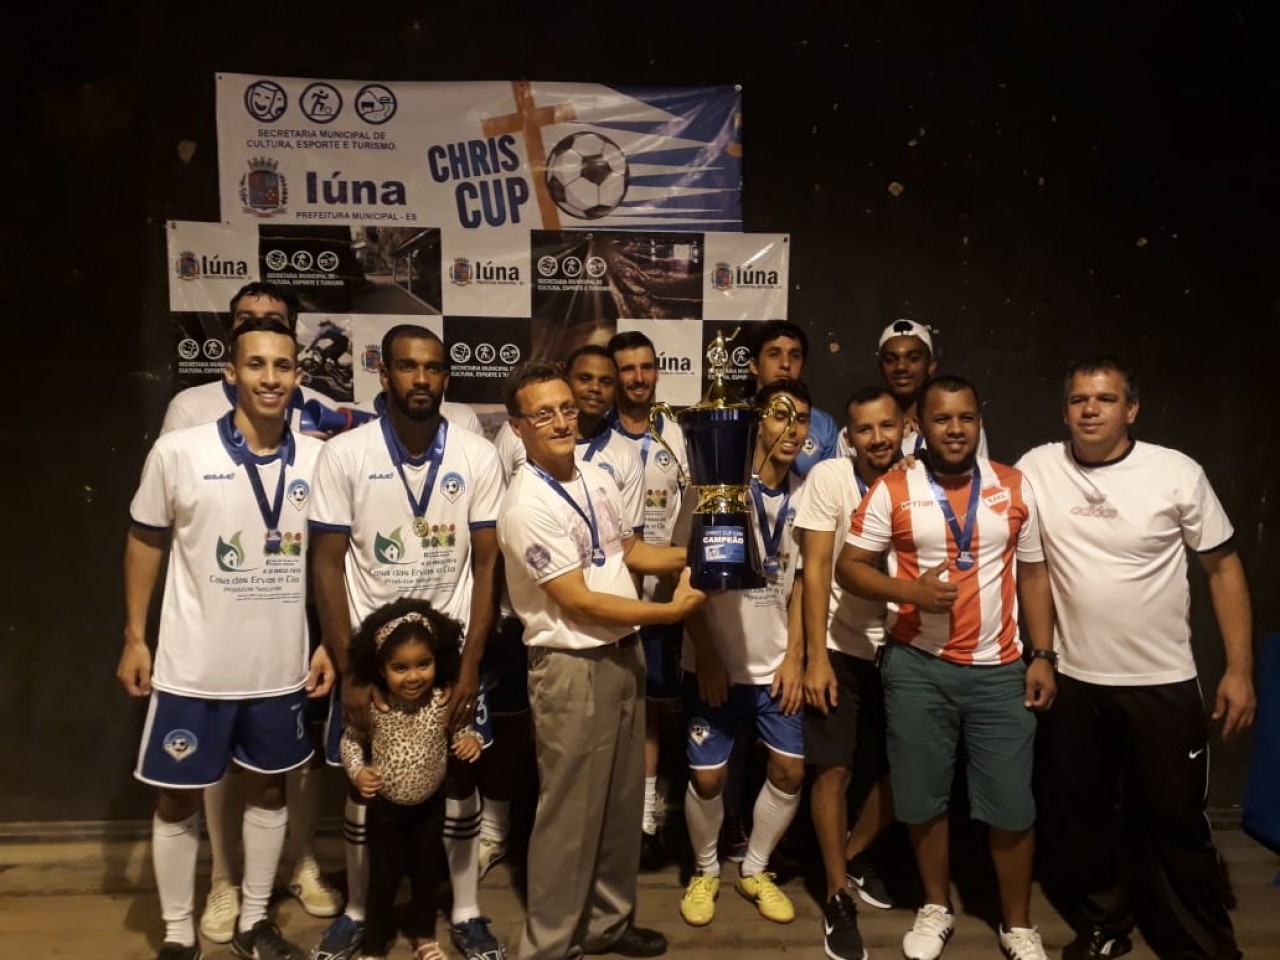 Ministério Graça e Paz leva o título de campeã da 2ª Christcup 2019 Campeonato de Futsal